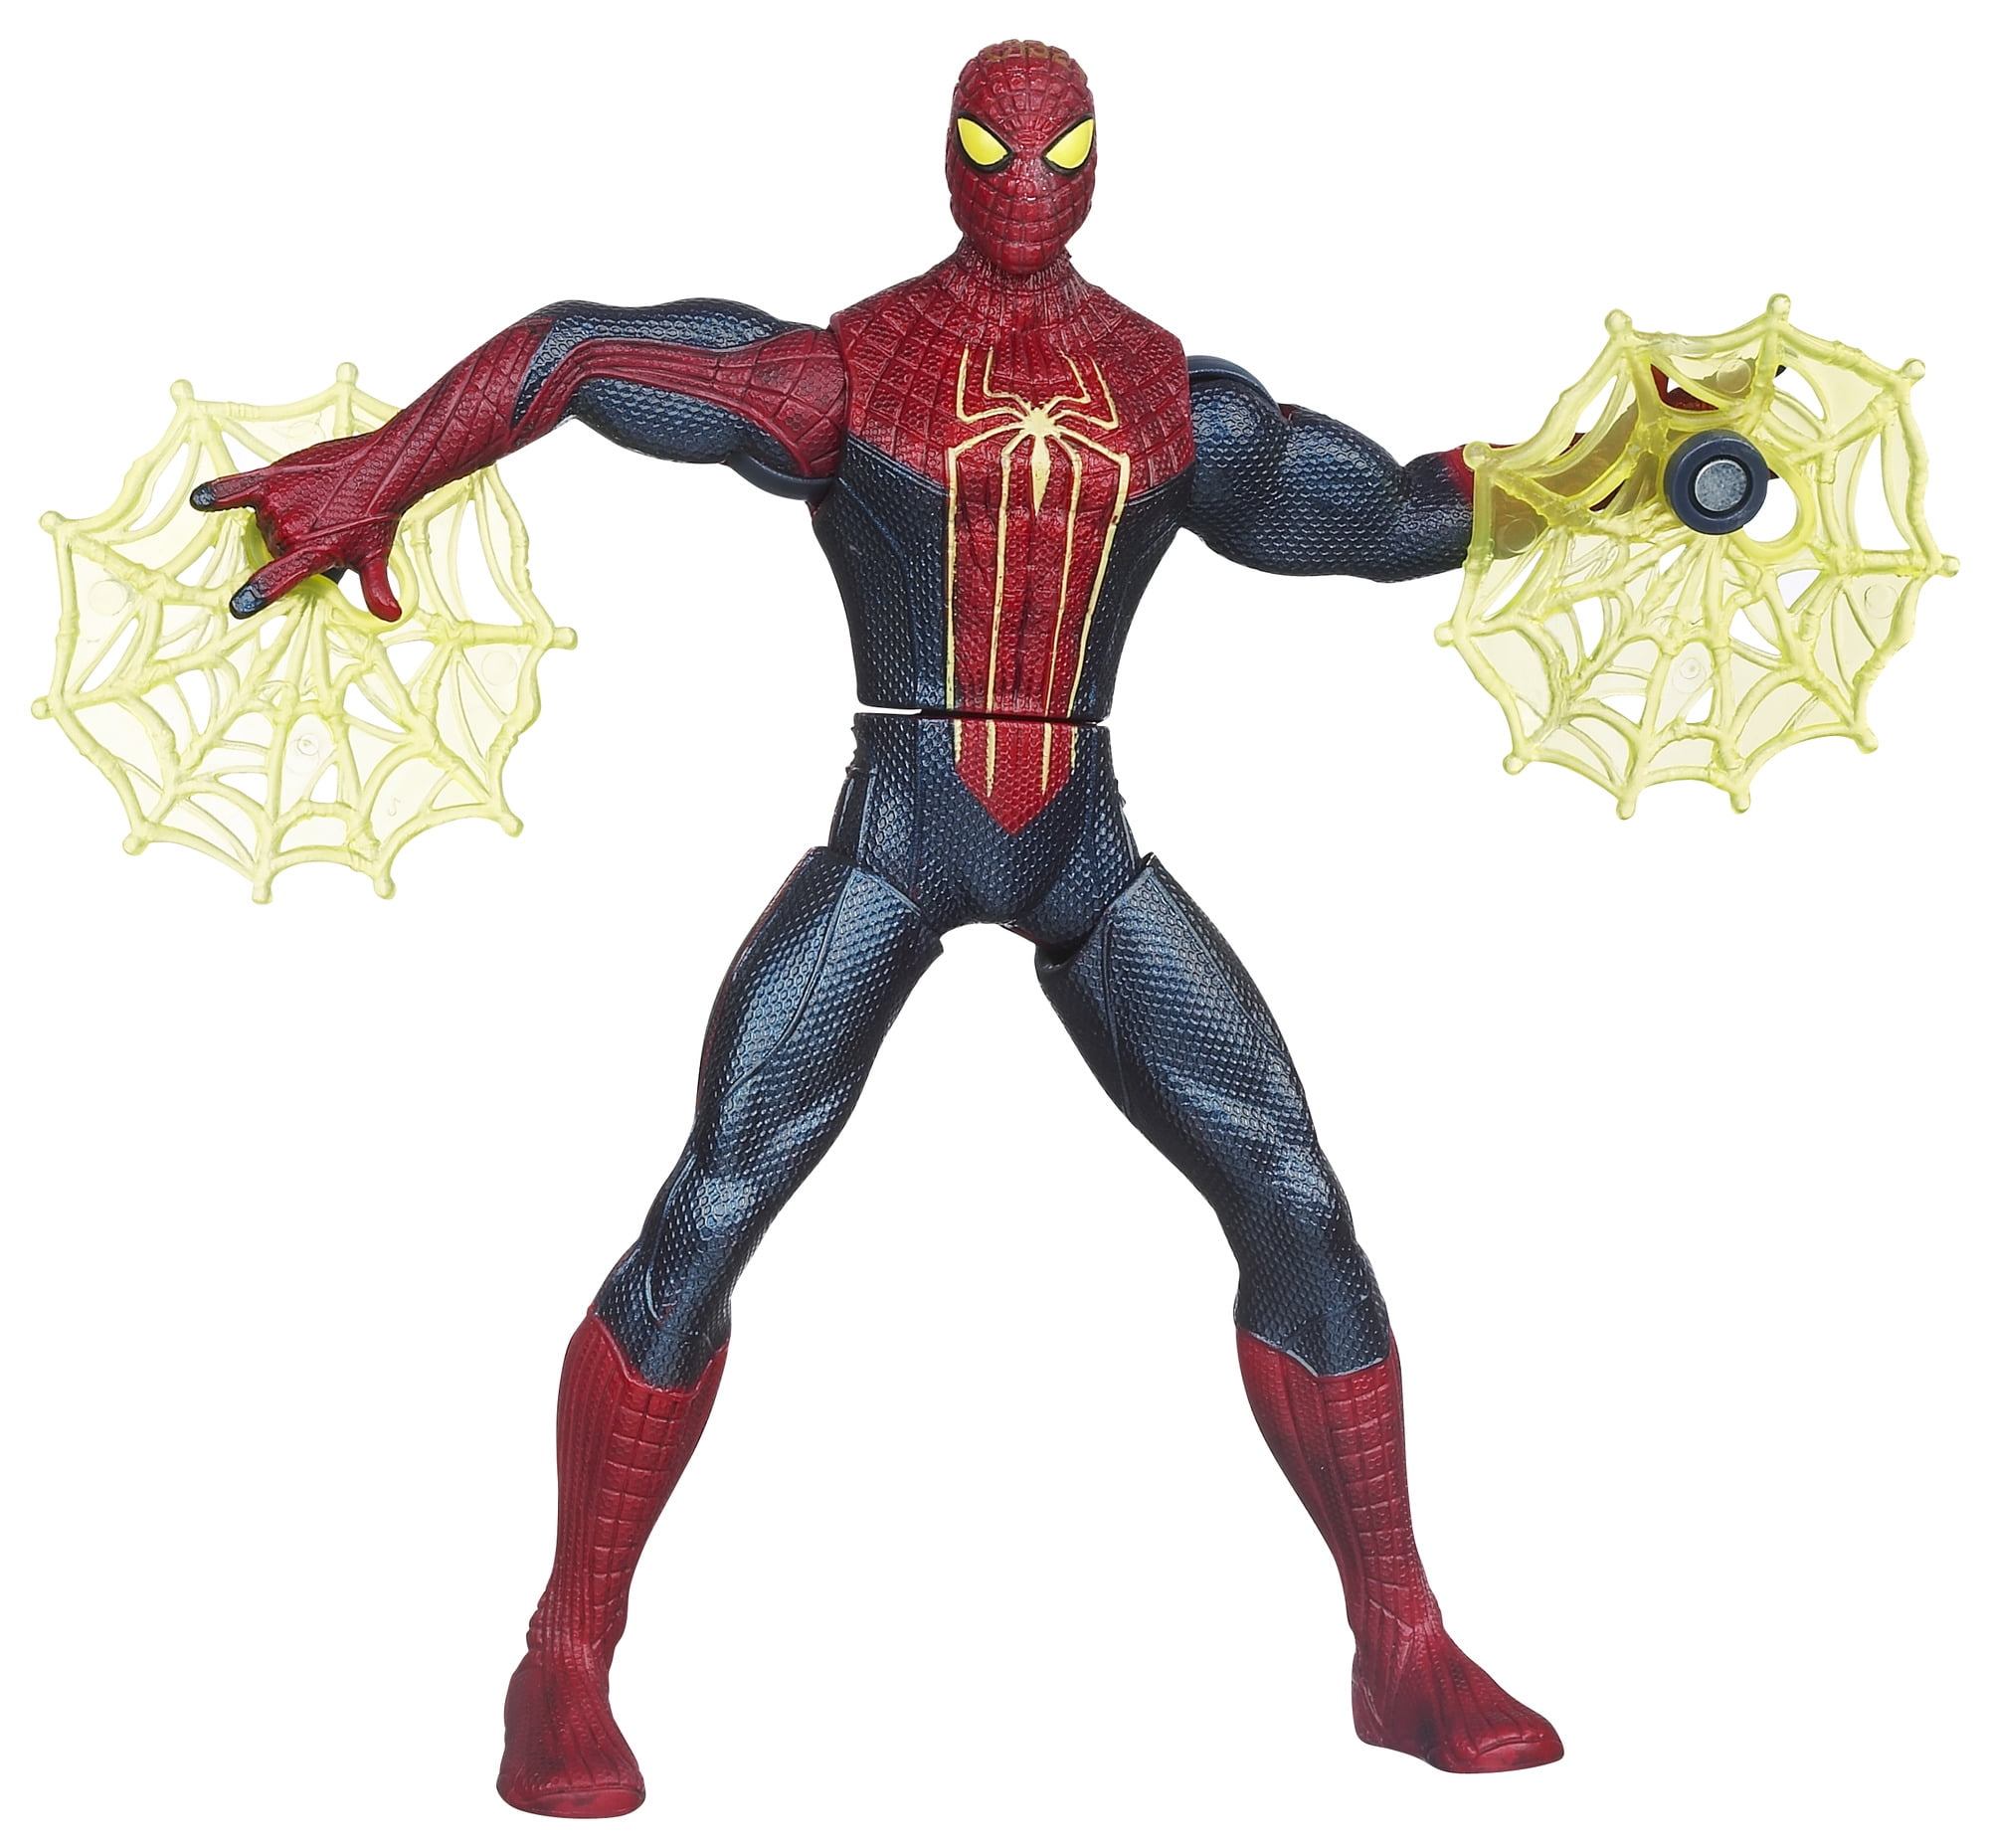 Achetez en ligne la figurine Spiderman : une action passionnante! - Bec17ea8 537f 43D0 8907 286414686e34 1.9315D75e60Dff1bDc8b2fDe3474af5a8